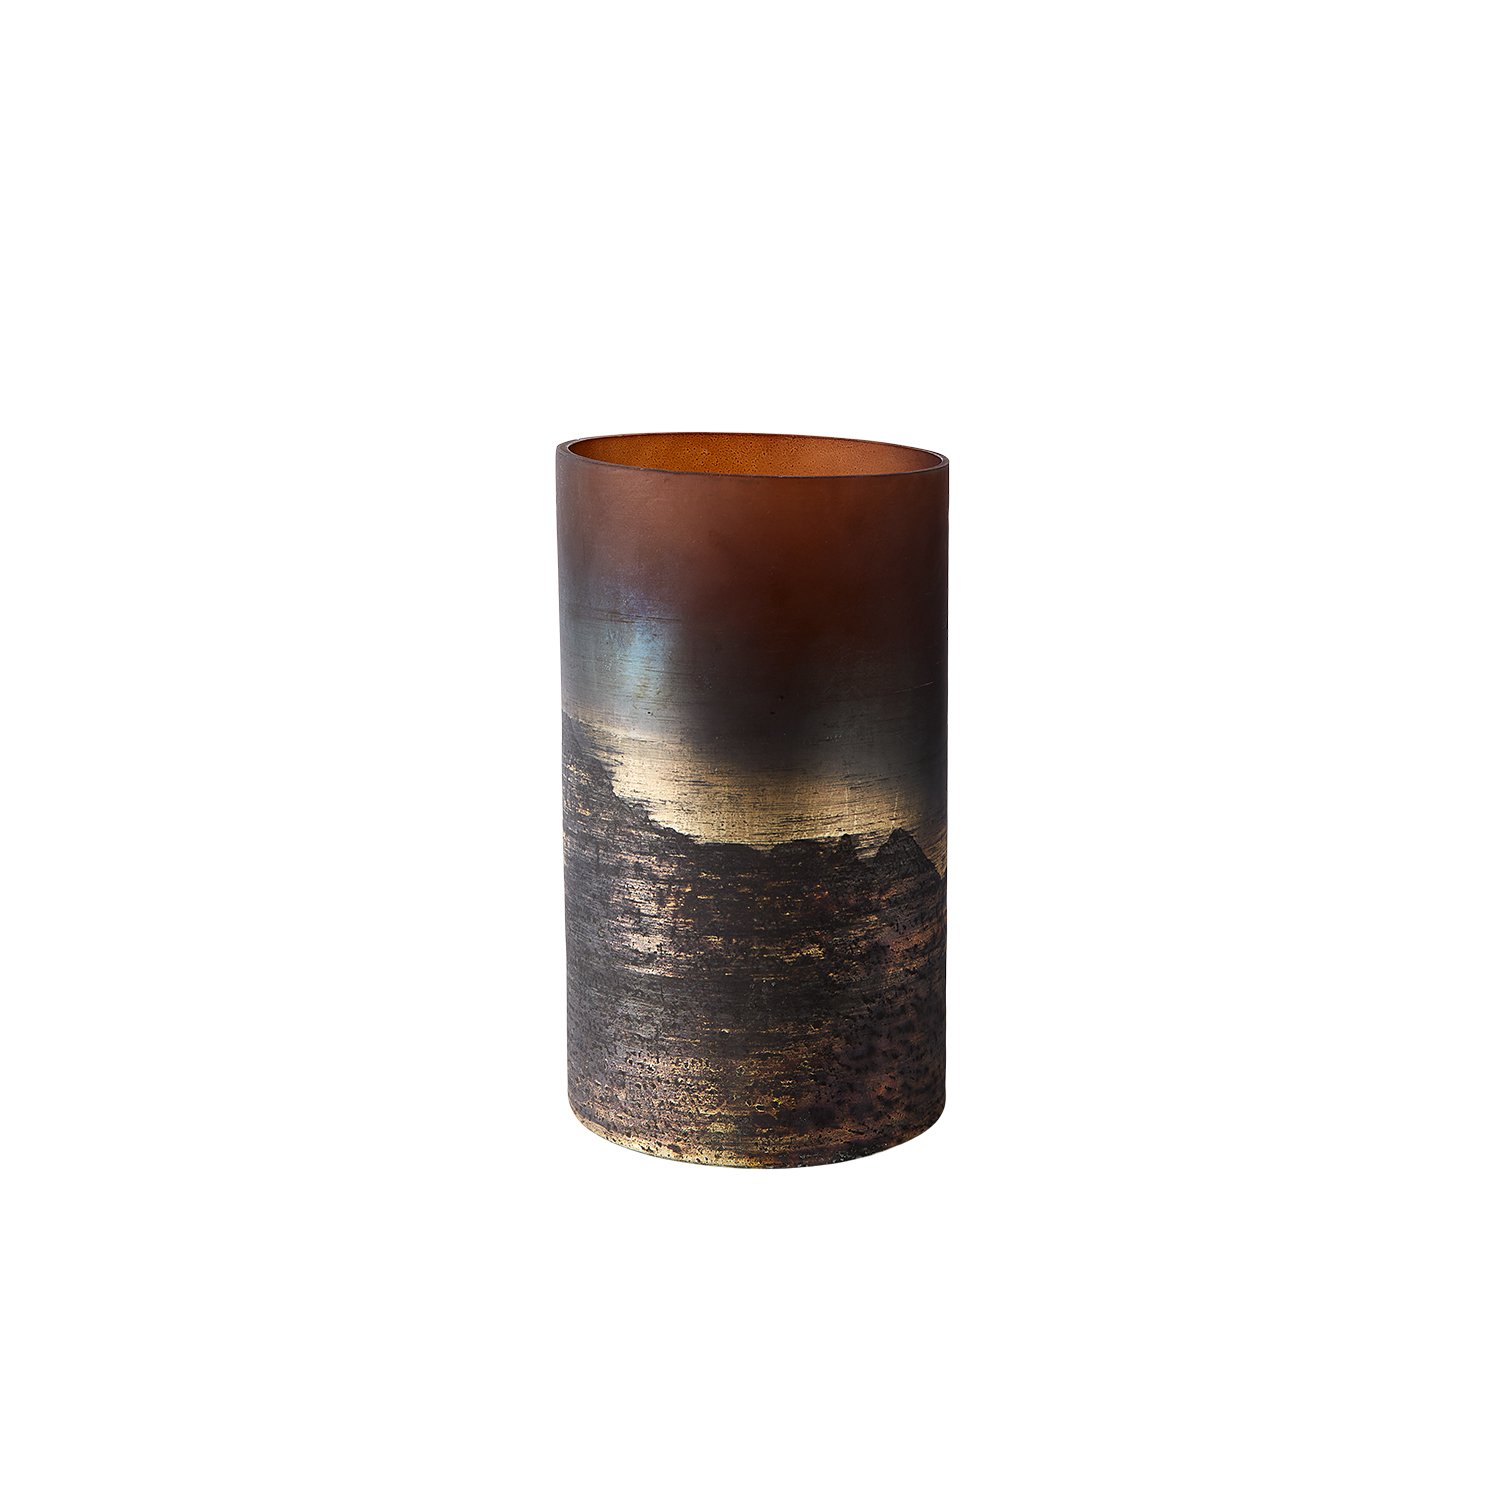 Muubs - Vase Lana 25 - Brown/Gold (9190002209)